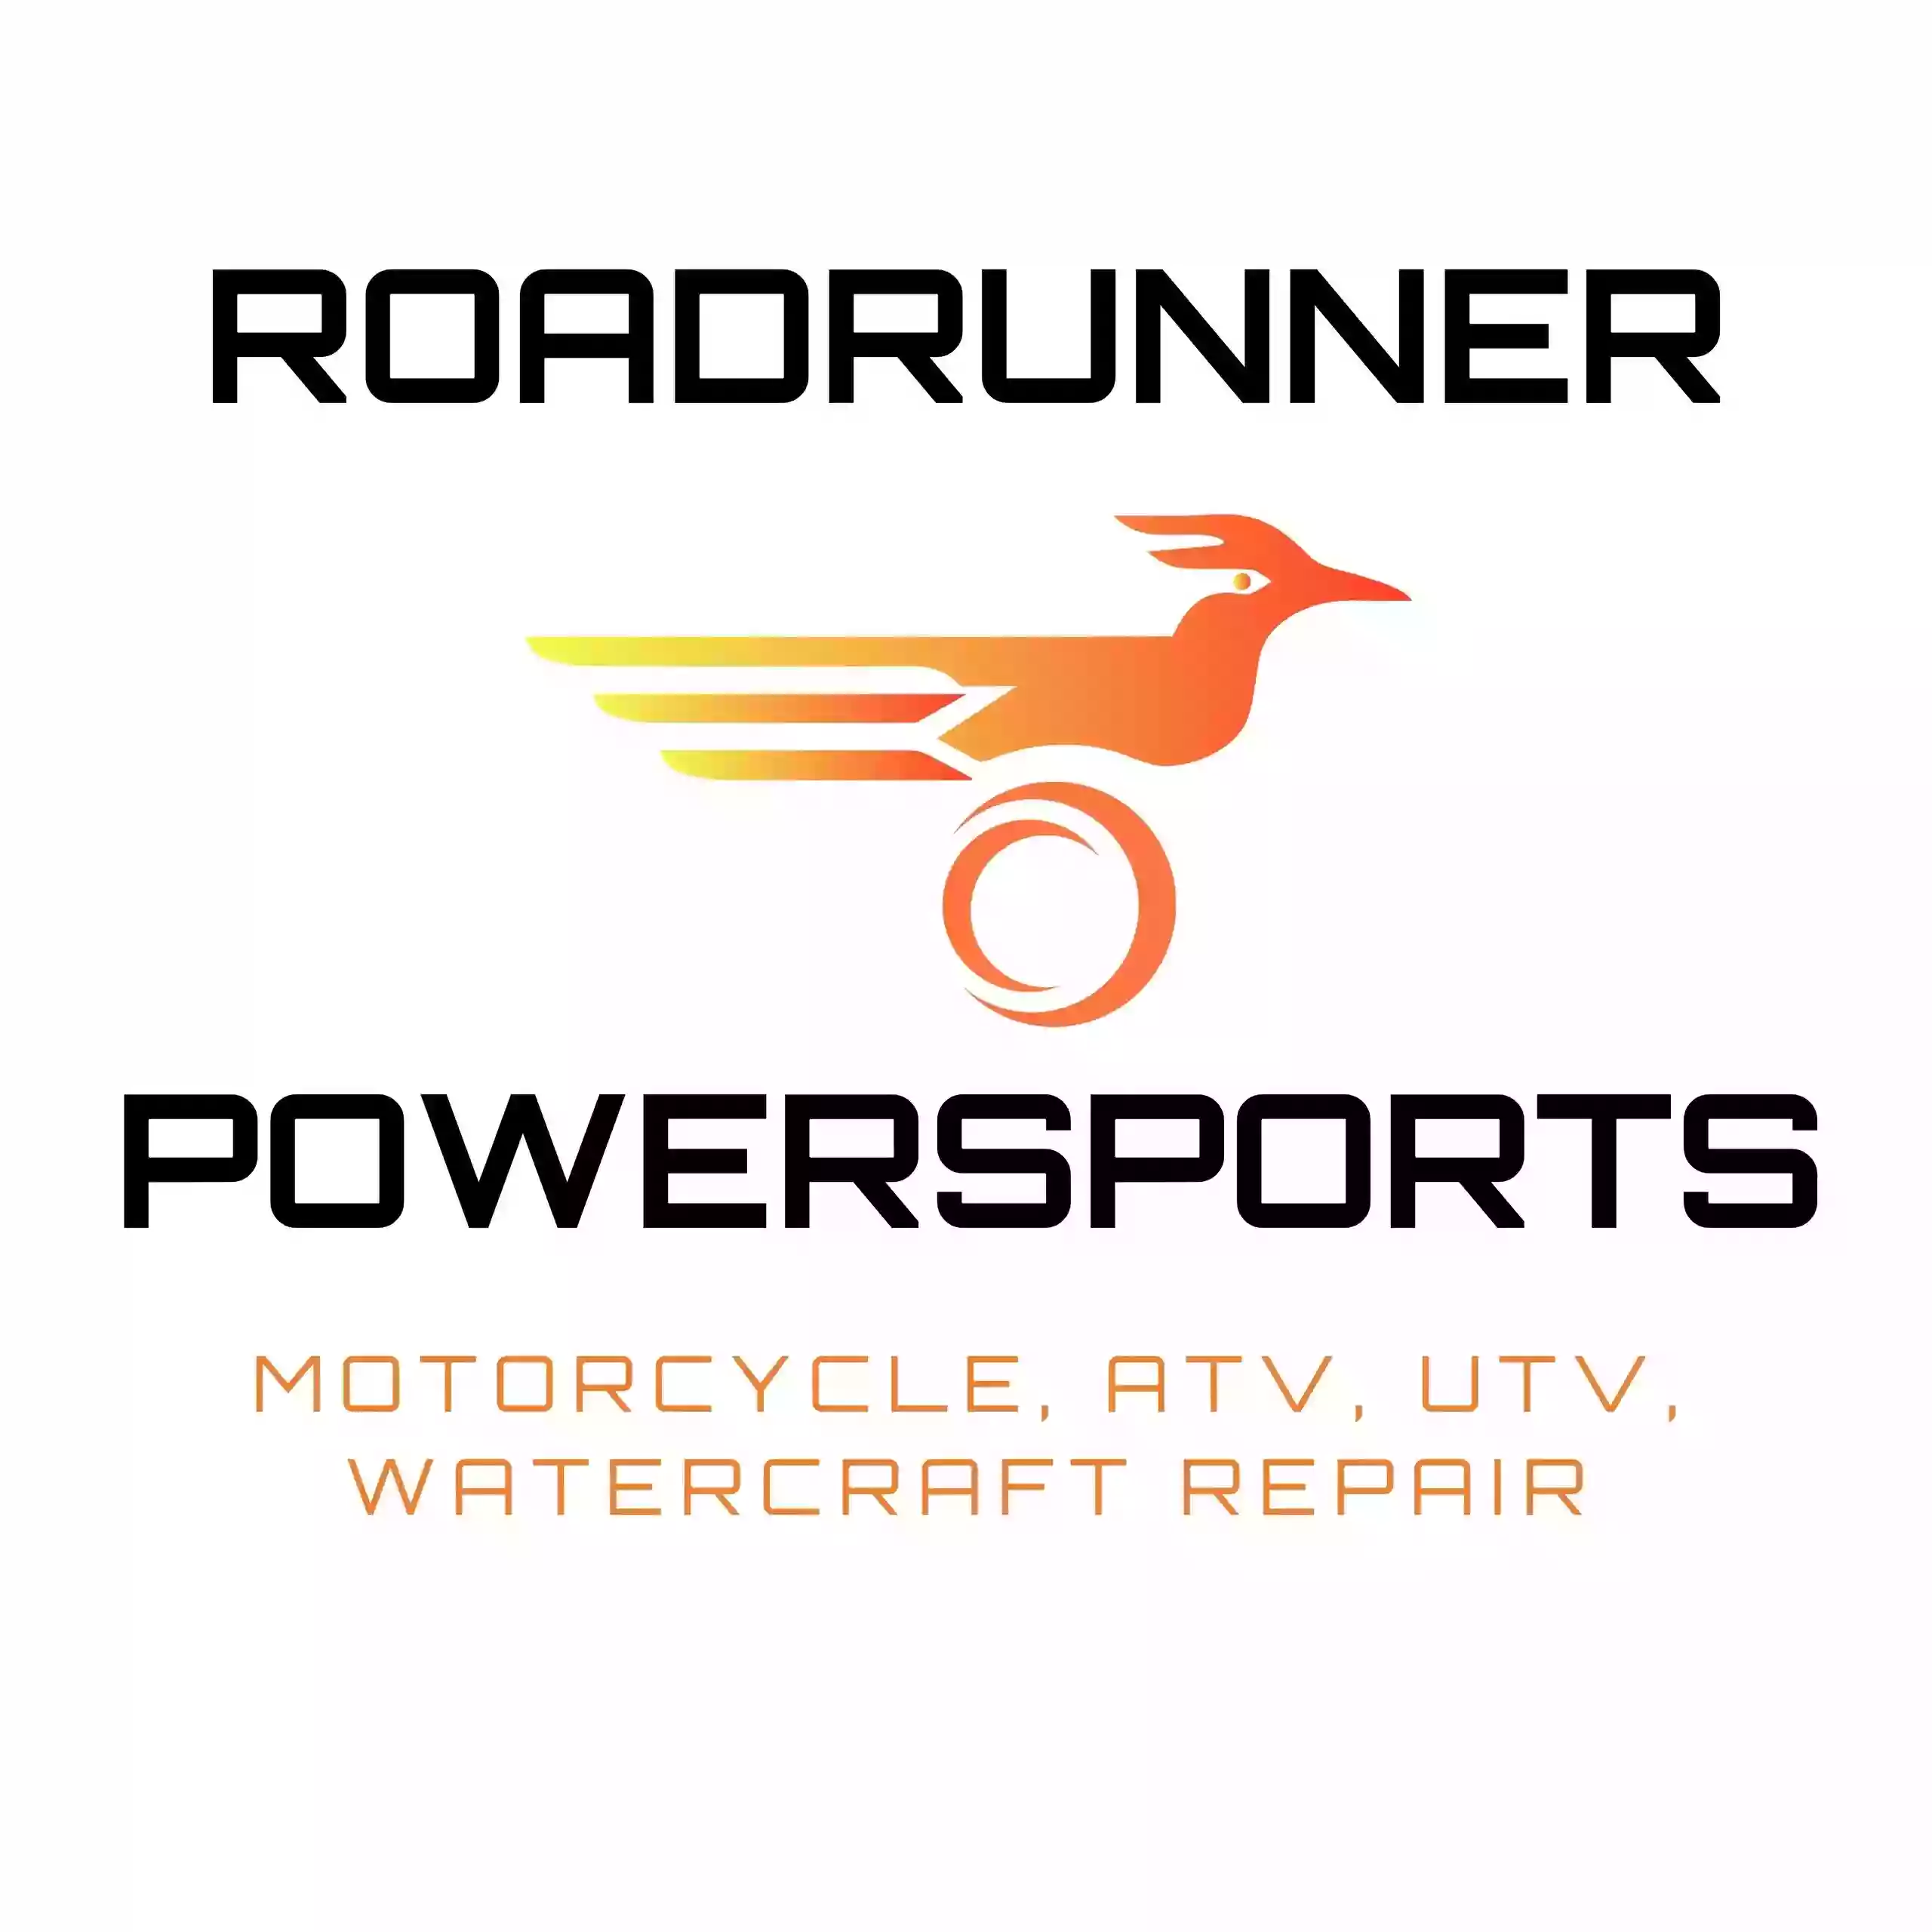 Roadrunner Powersports